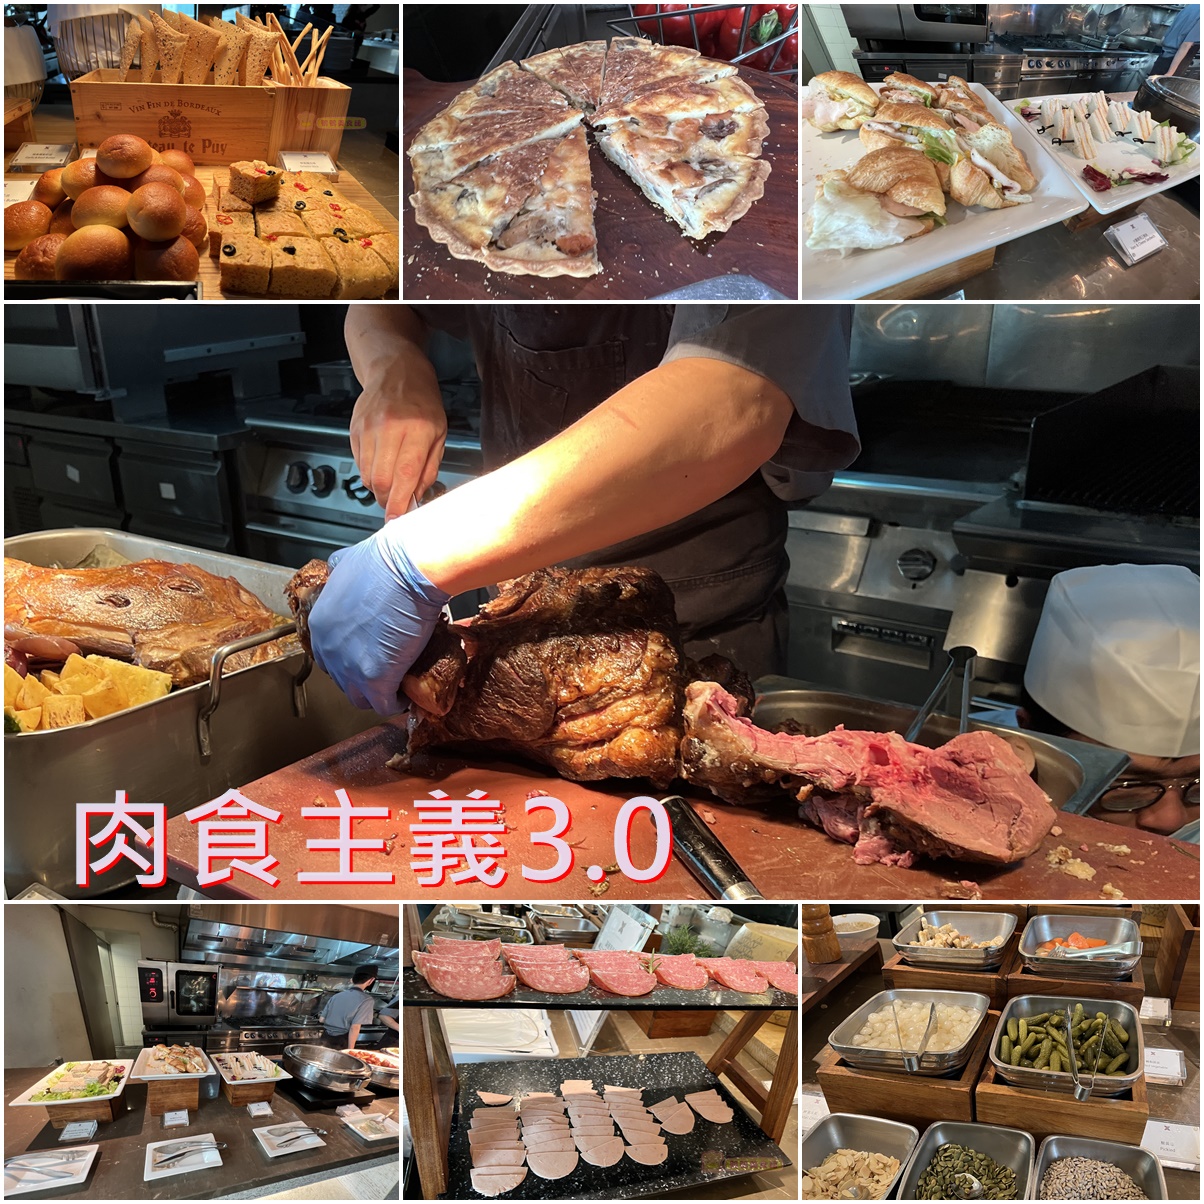 (4)台北信義區。寒舍艾麗LA FARFALLA 義式餐廳~肉食主義3.0假日下午茶牛排吃到飽，羊排第一名